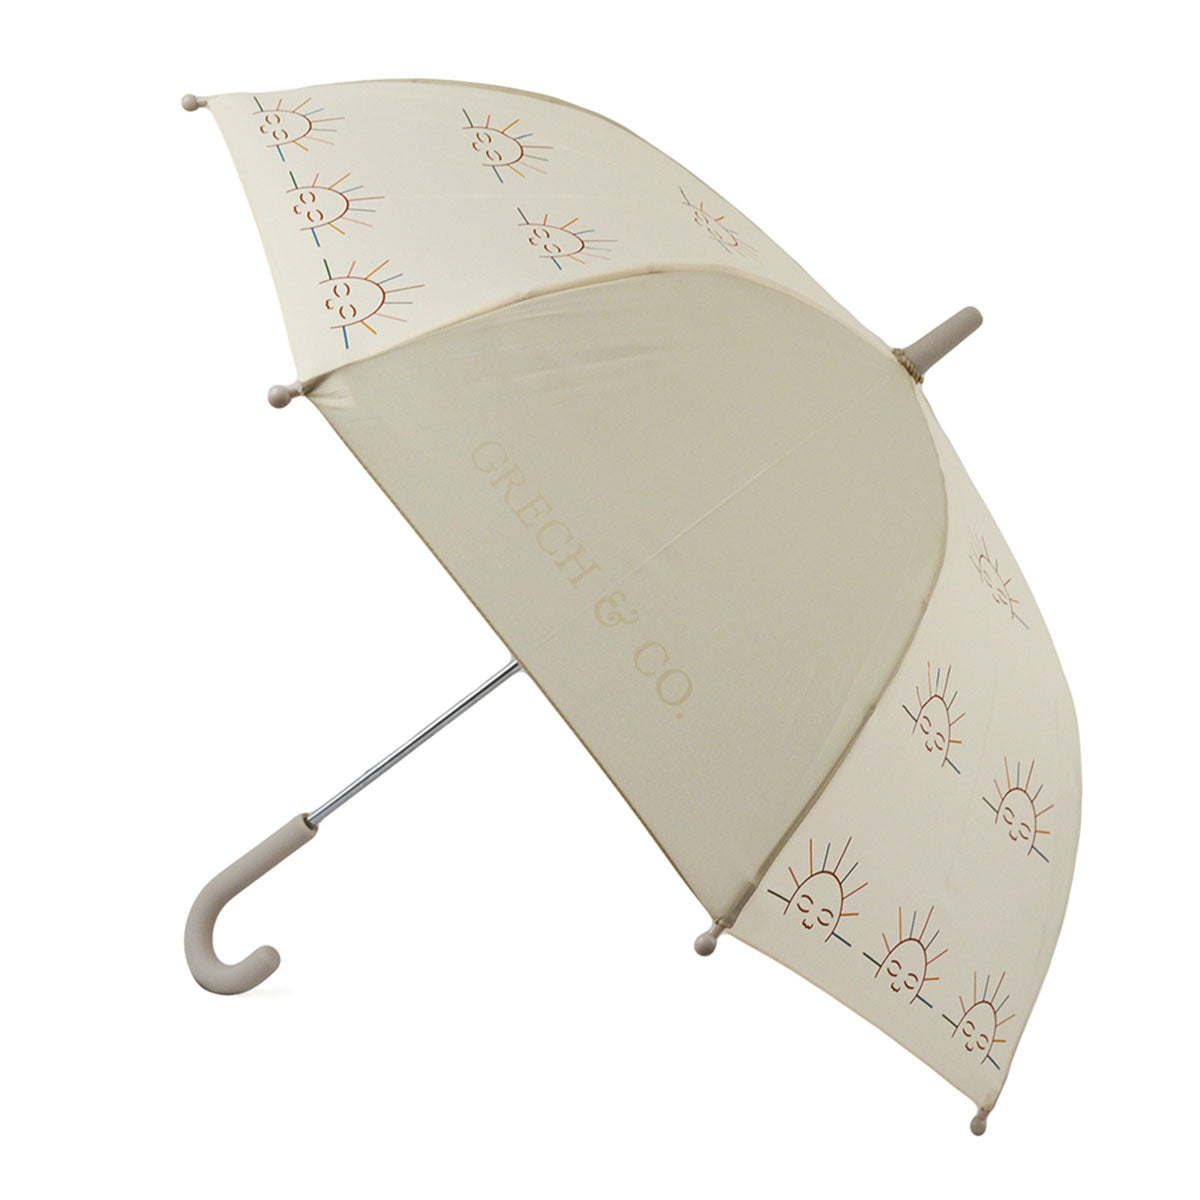 Bij regen én zonneschijn zorgt de duurzame Grech & co. paraplu kids atlas ervoor dat je stijlvol voor de dag komt. Leuk voor kinderen die willen matchen met hun grote broer/zus, mama of papa. VanZus